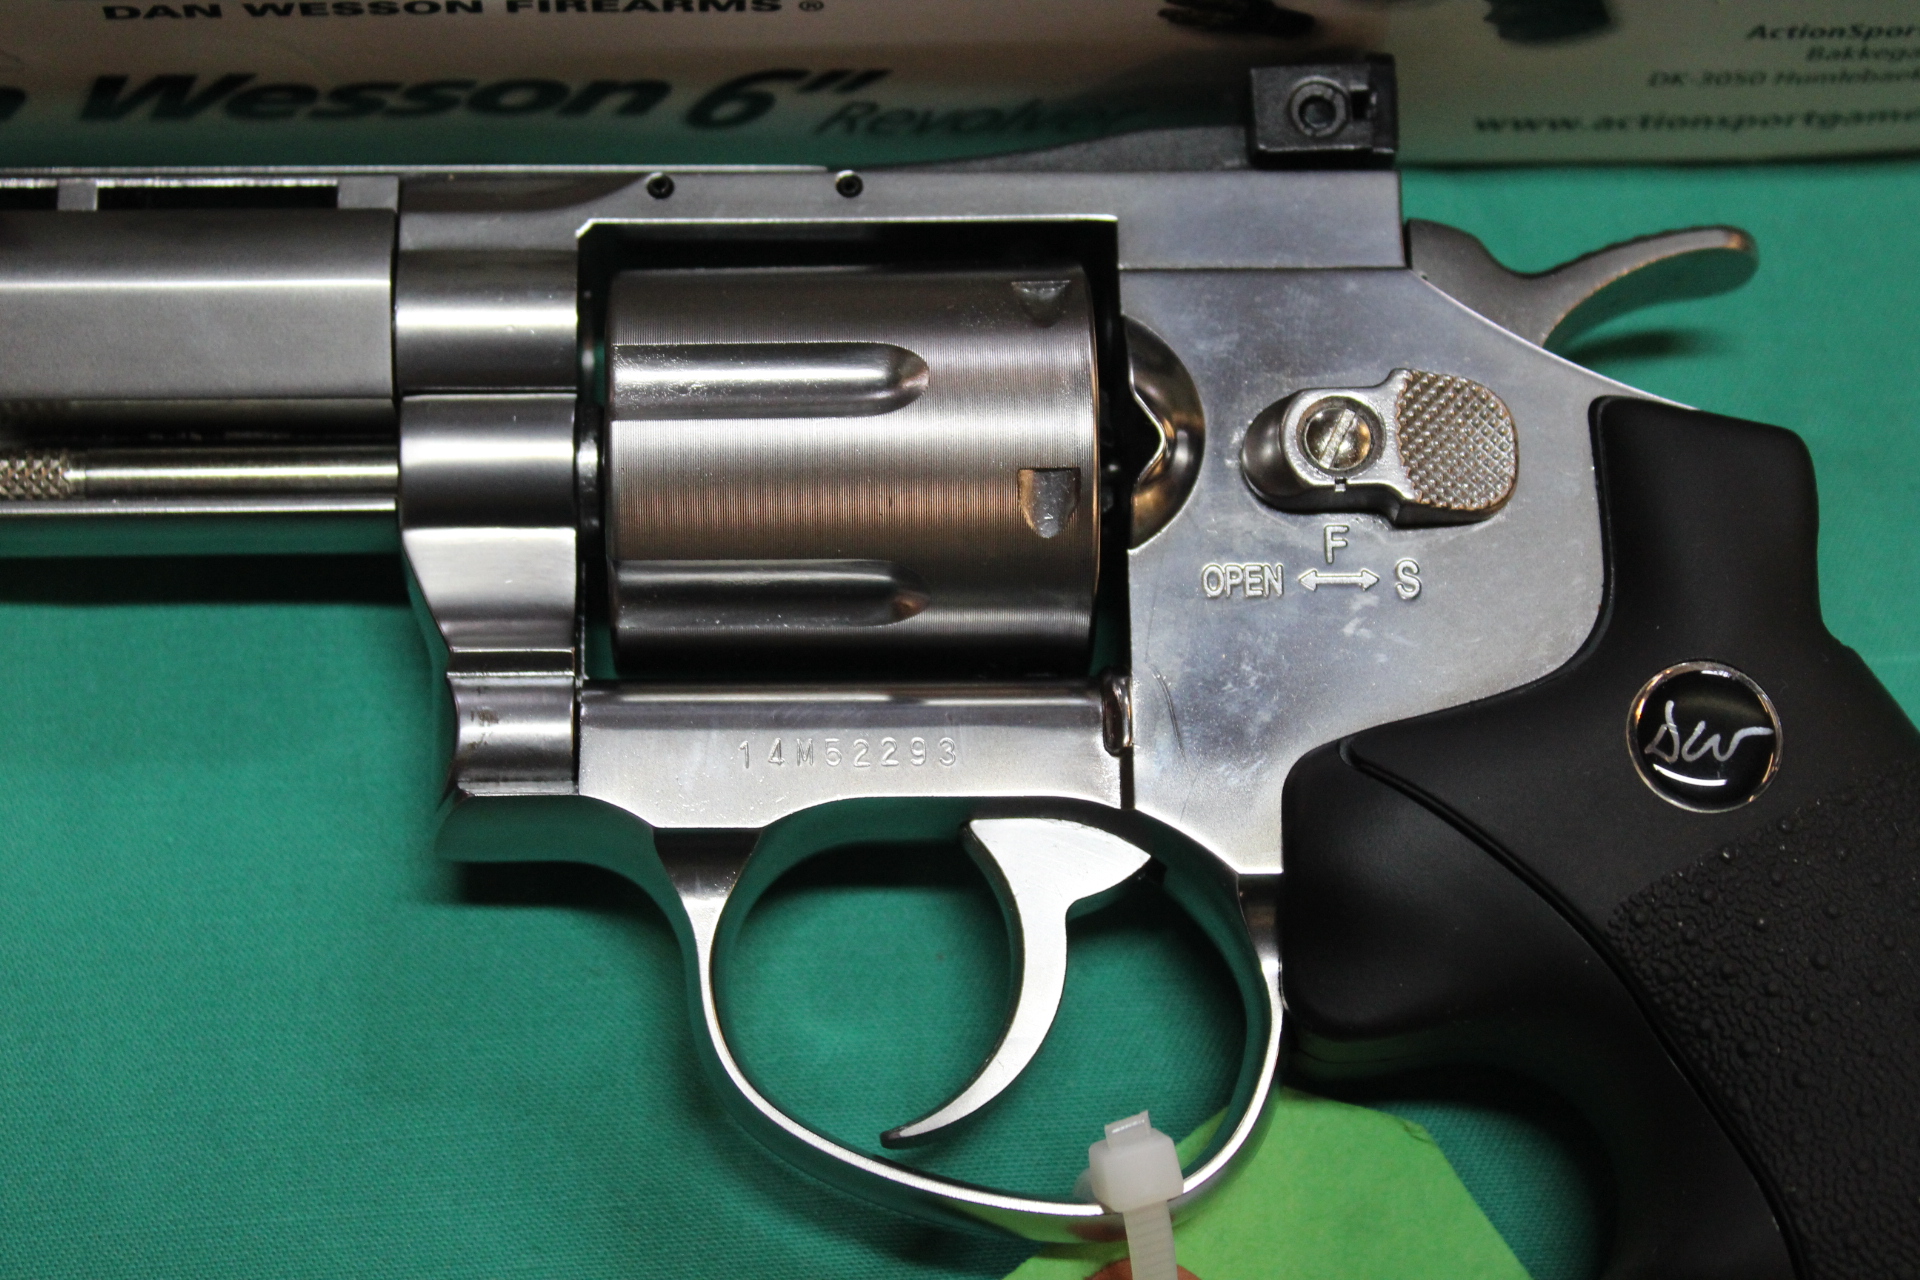 A Dan Wesson 6" revolver . - Image 2 of 2